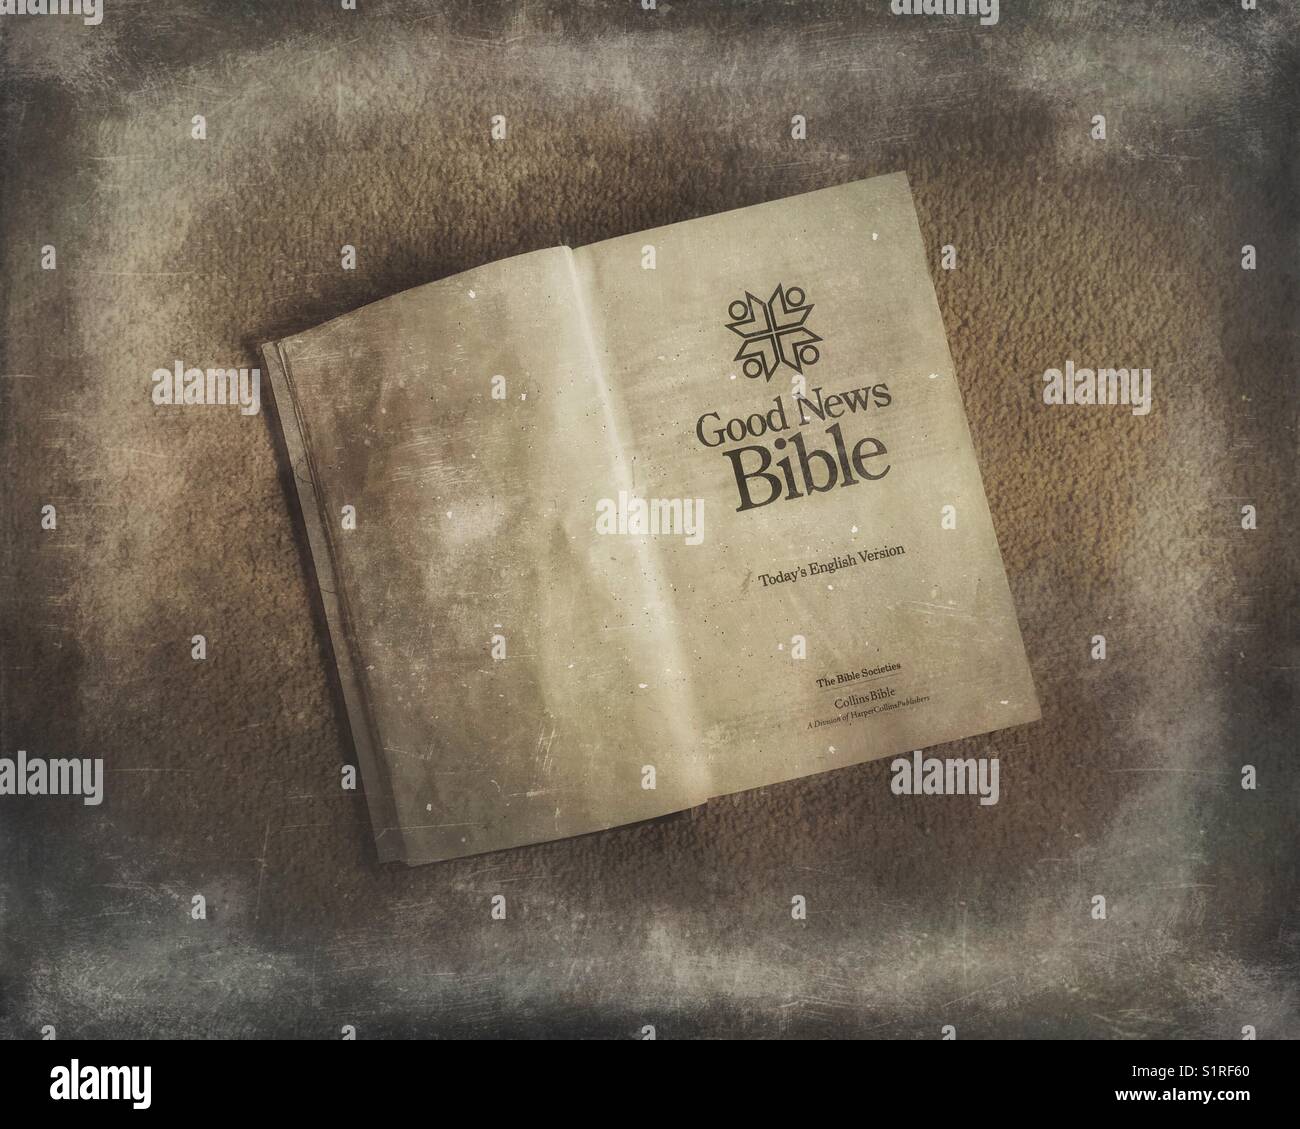 Good News Bible book Stock Photo